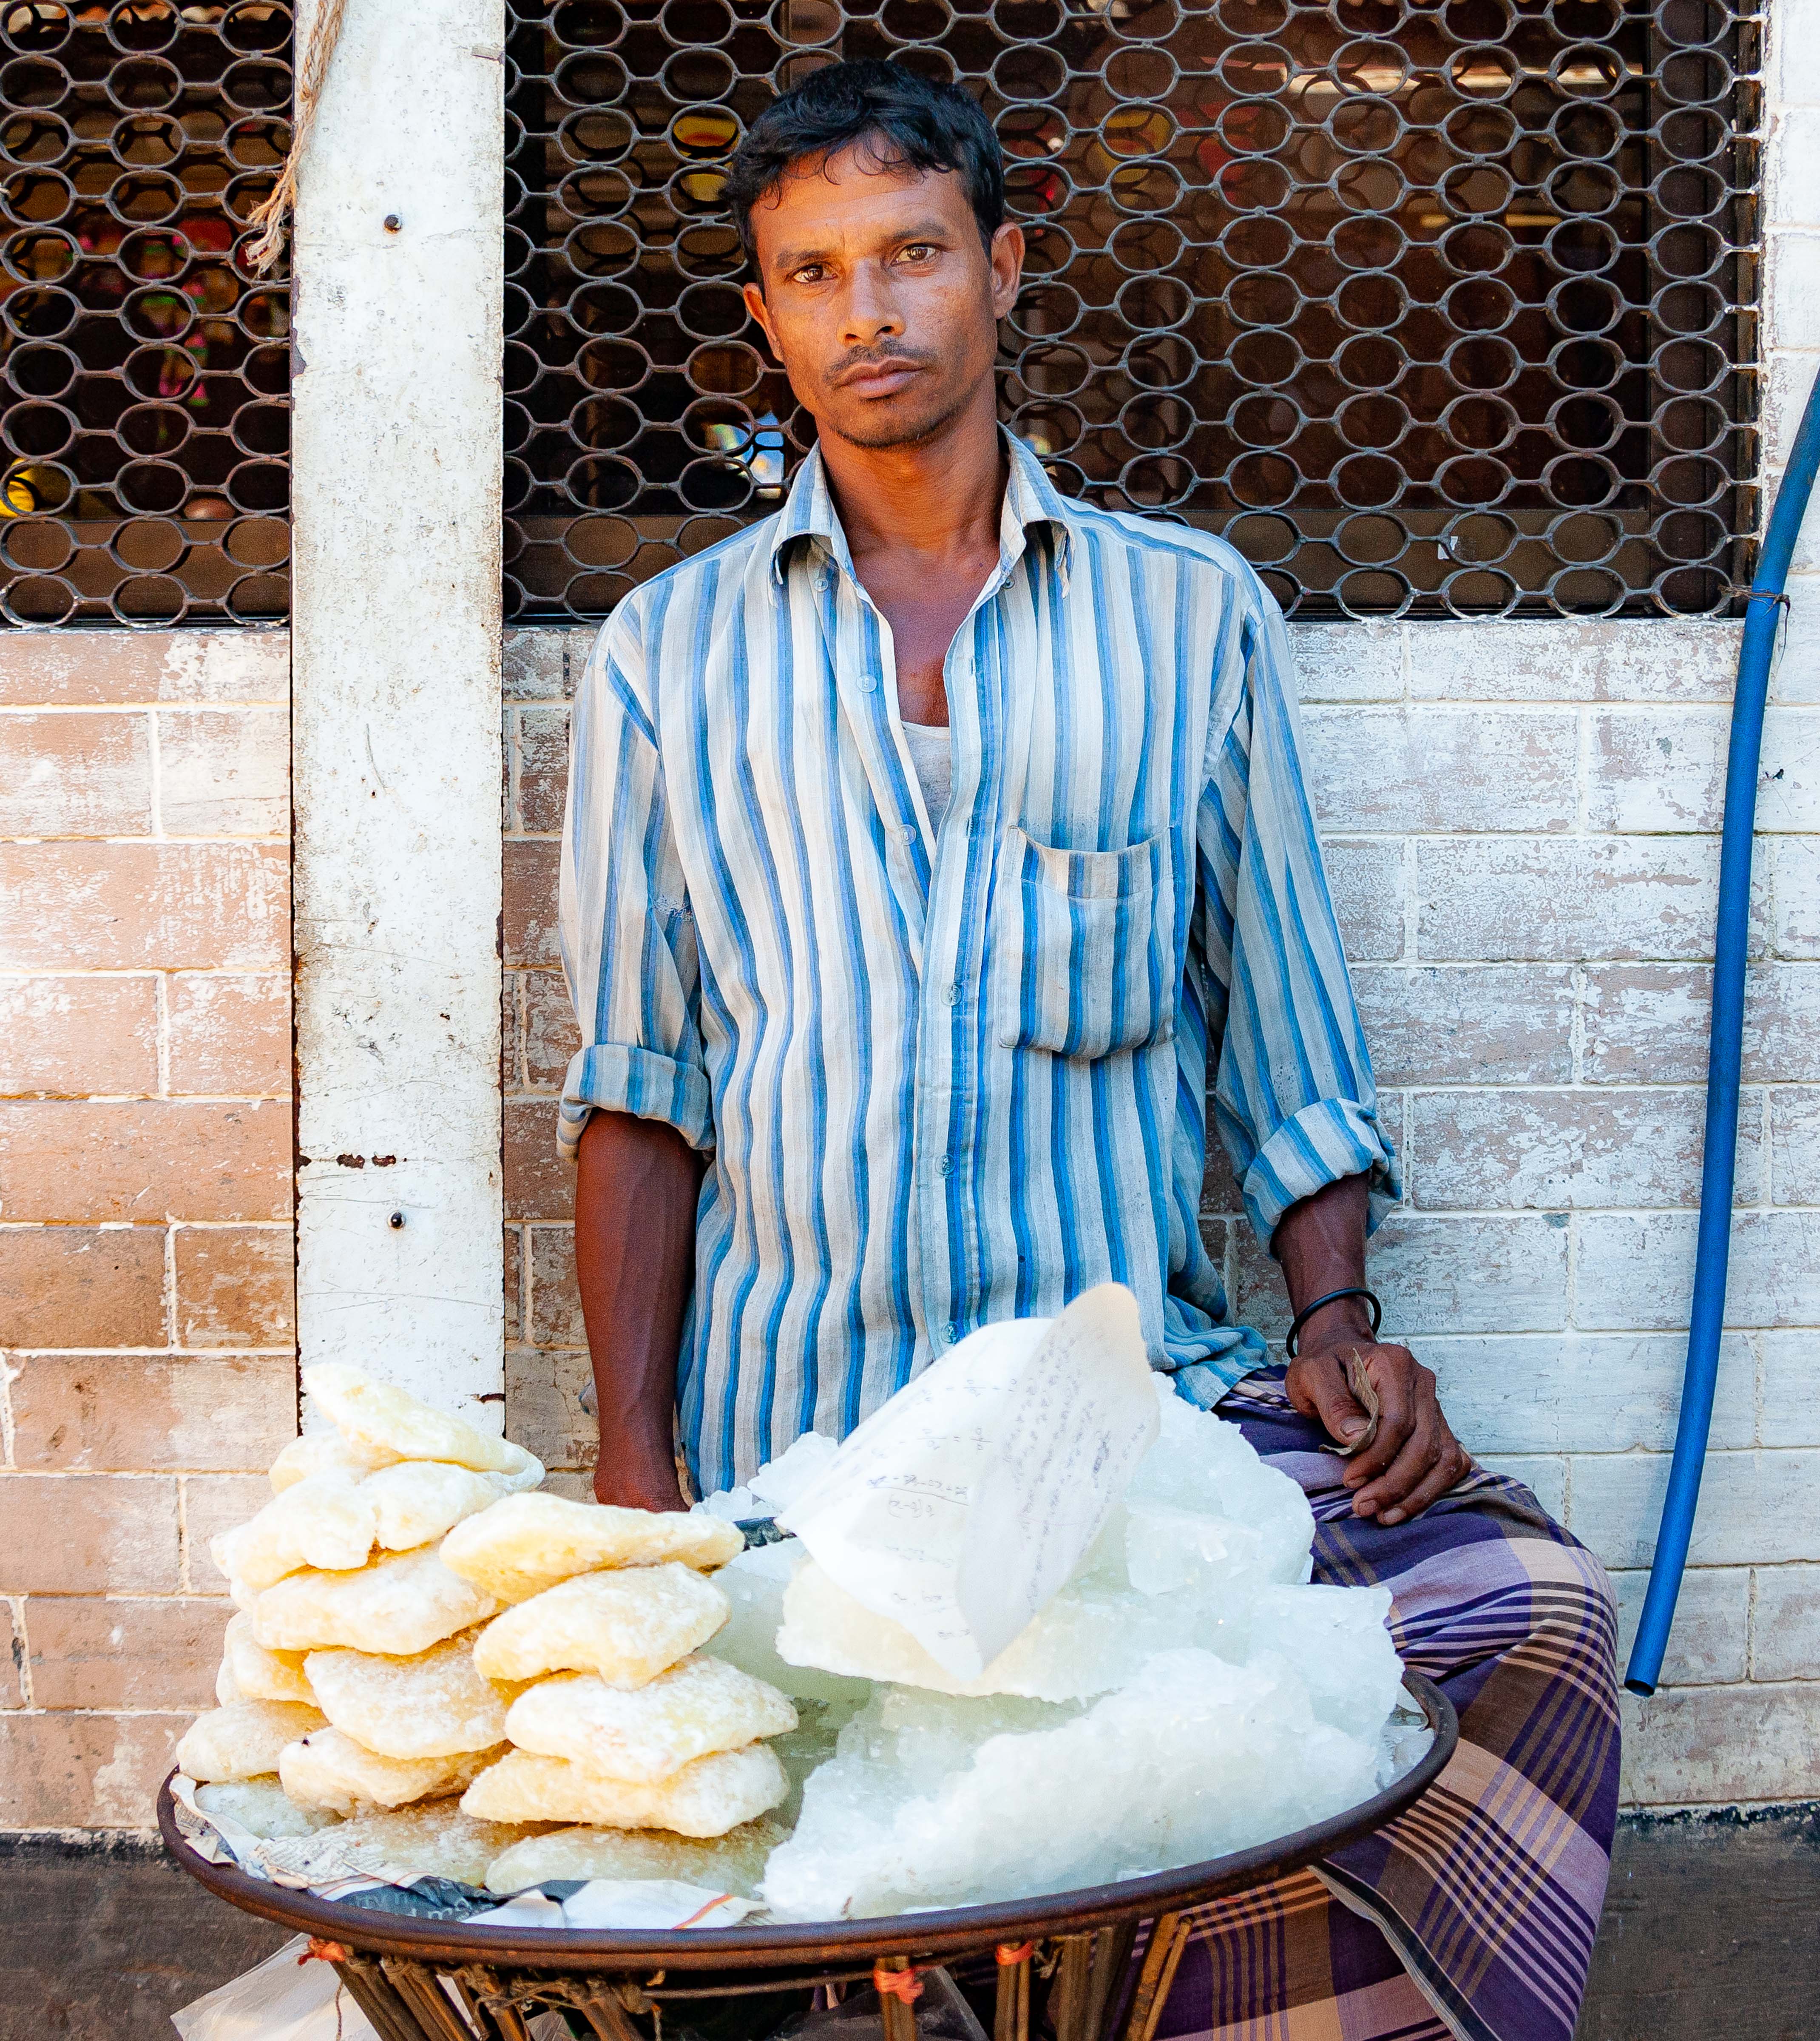 Bangladesh, Netrakona Prov, Food Vendor, 2009, IMG 8771